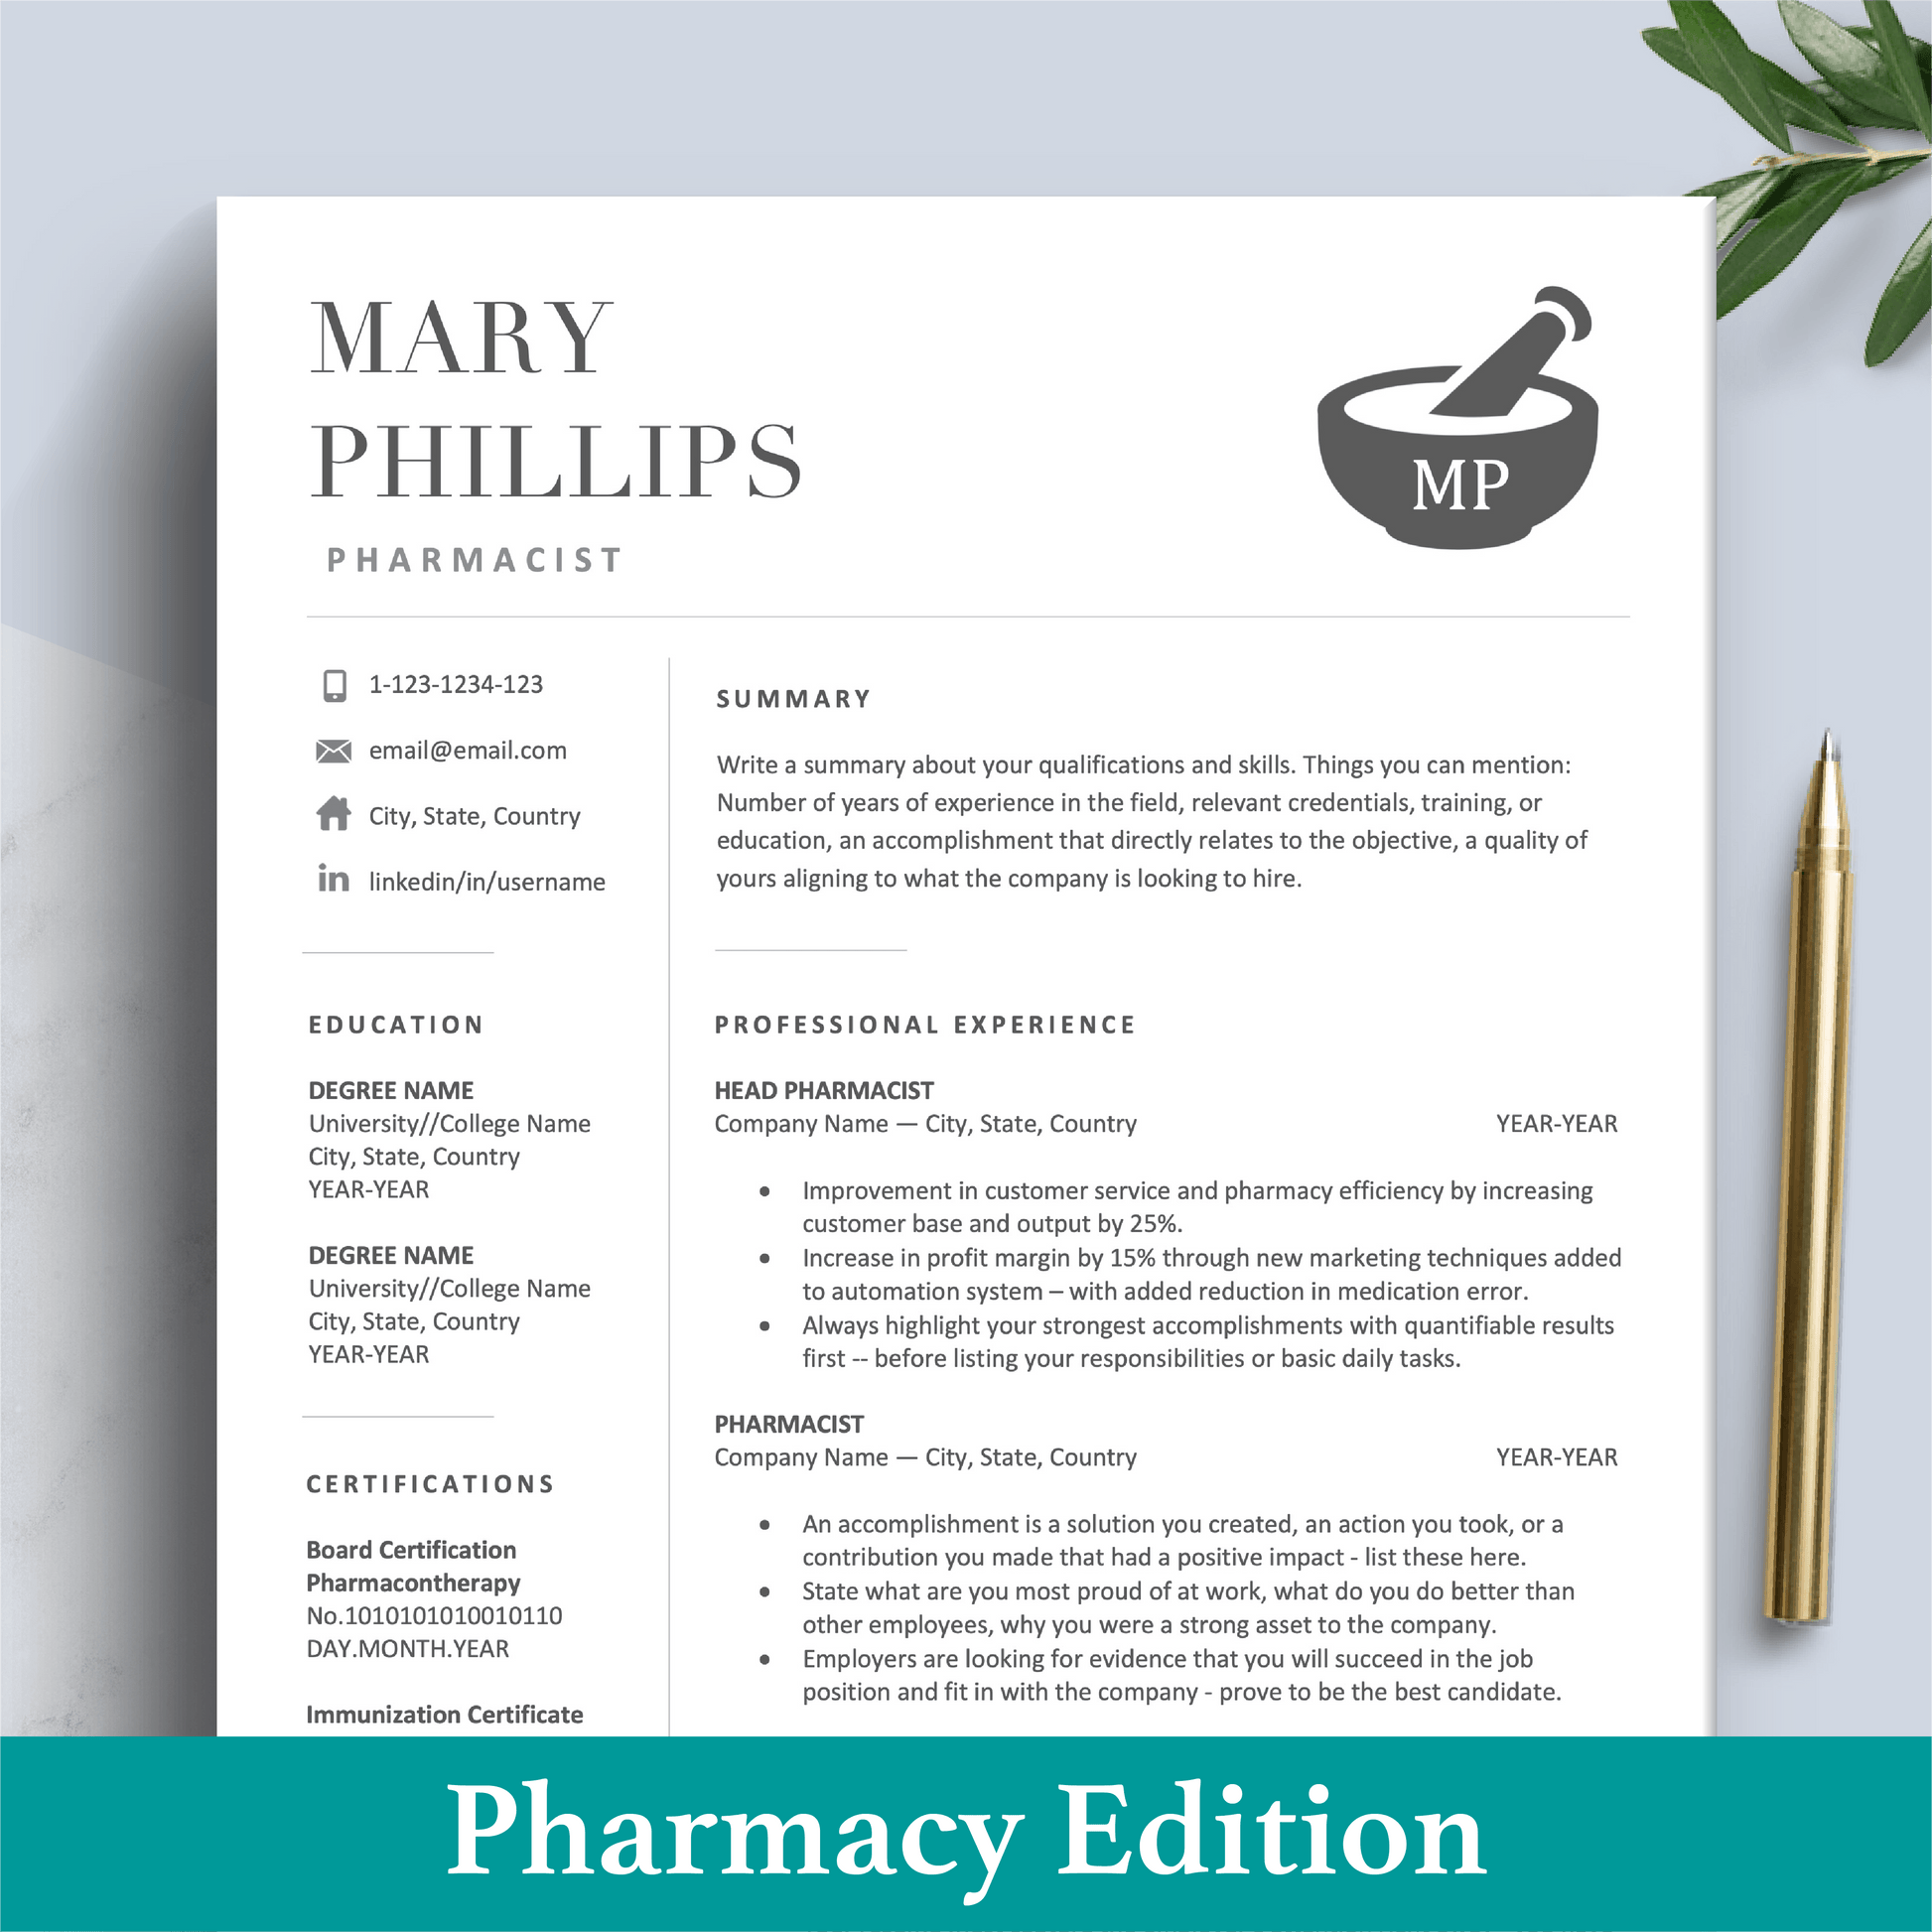 Pharmacist Resume | Pharmacy CV | Medical Resume - The Art of Resume